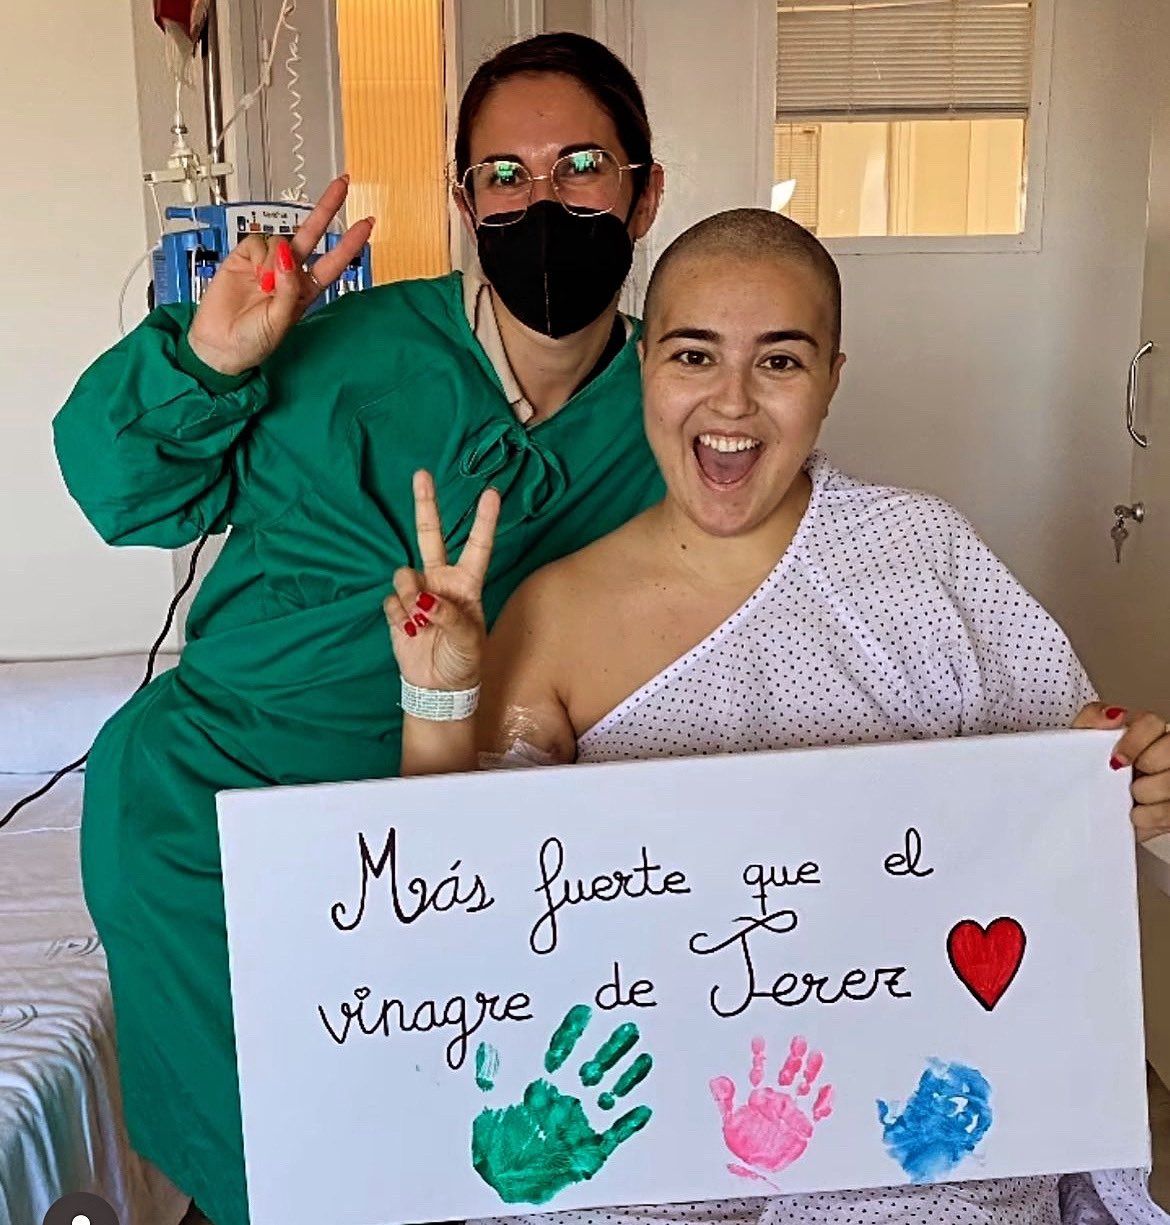 Alba, con su hermana, en el hospital de Jerez, donde sigue 'más fuerte que el vinagre'.